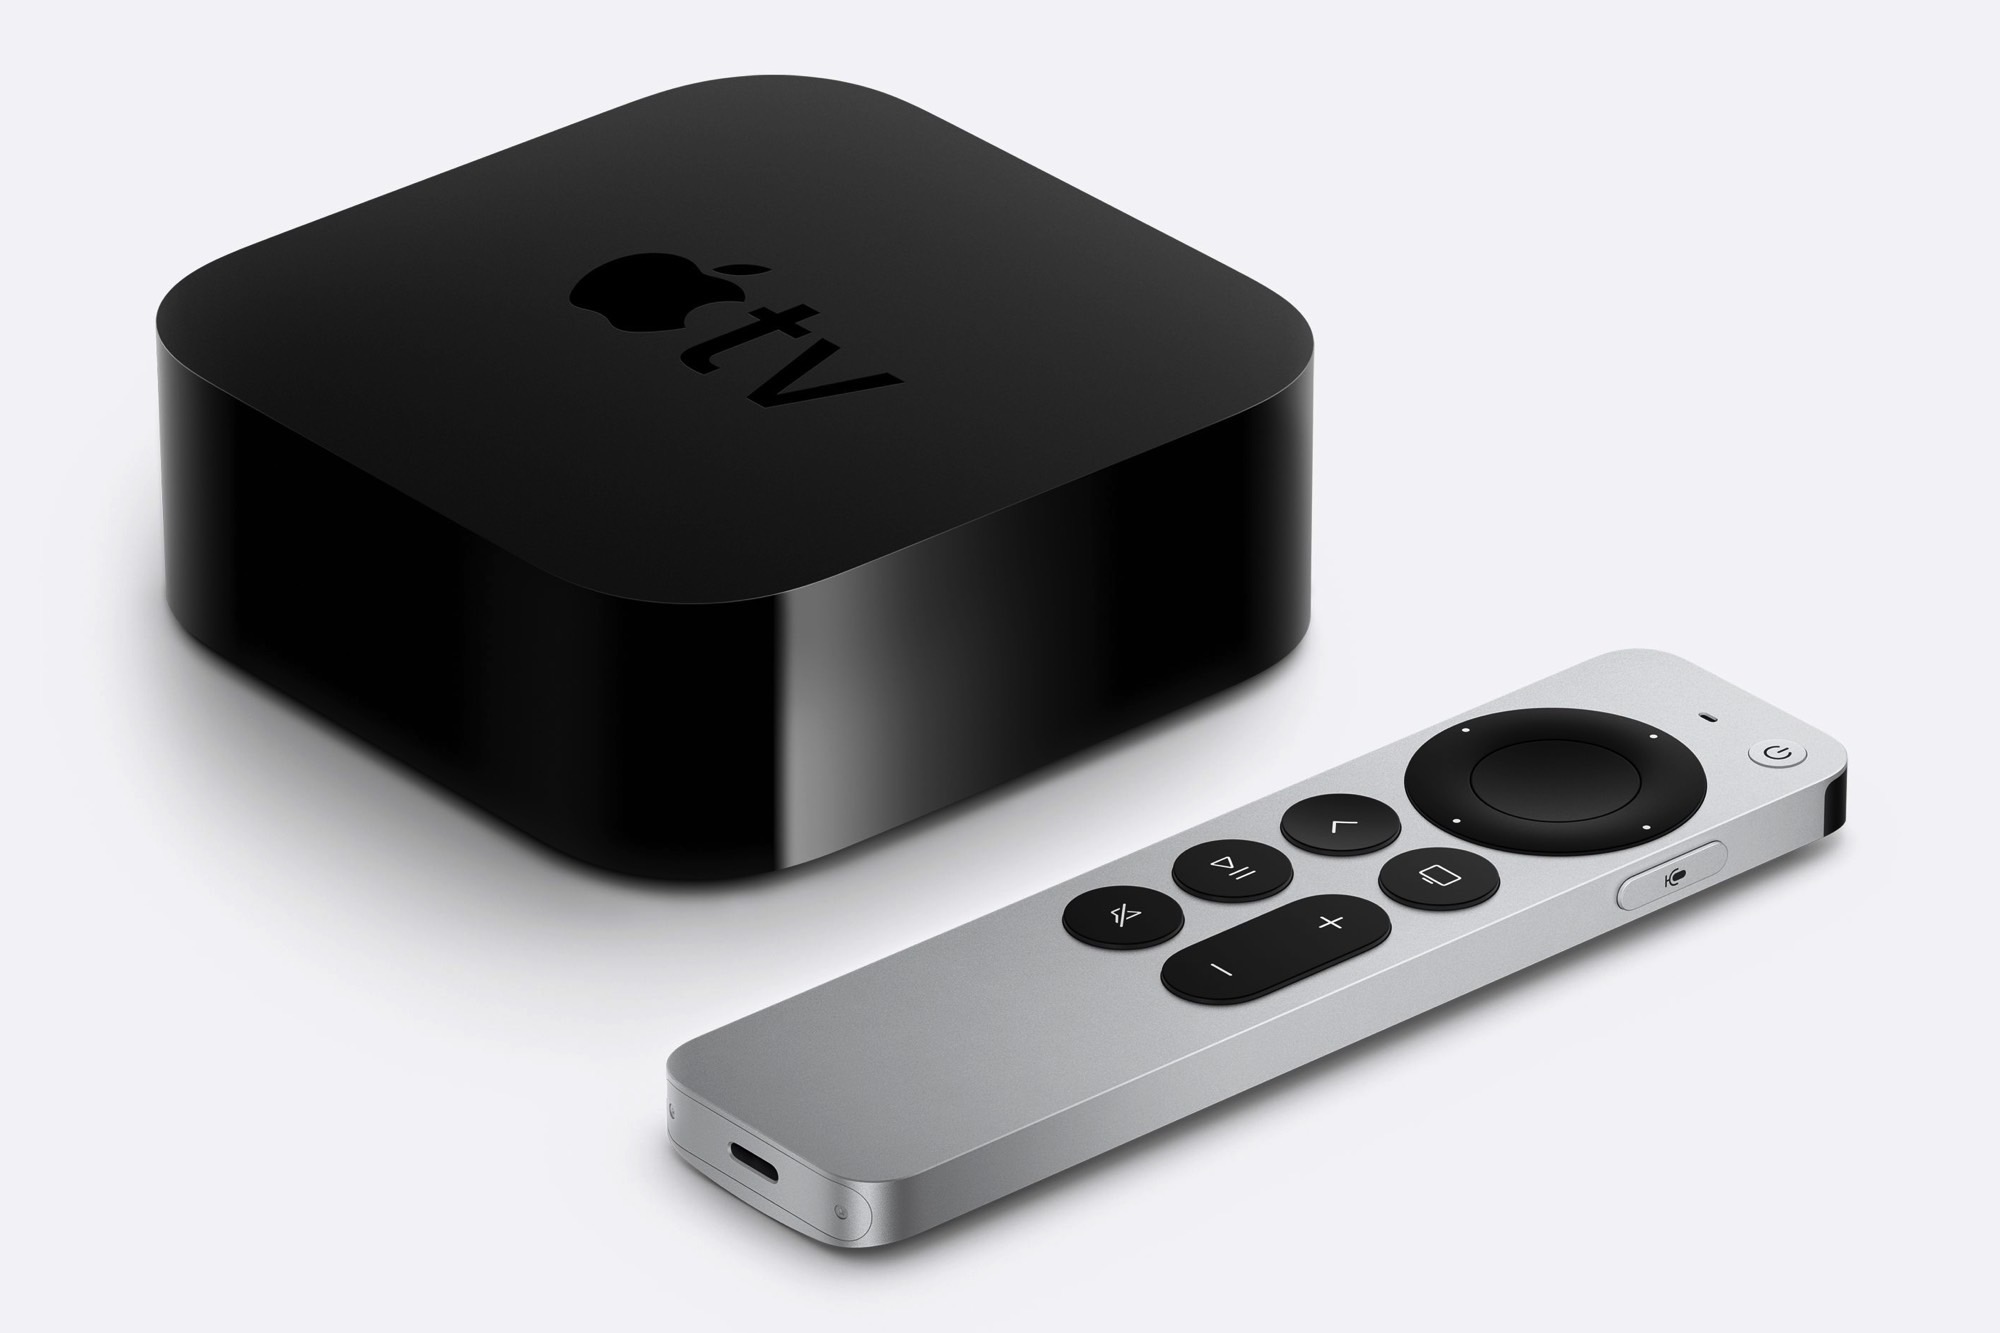 Illustrer detaljeret Vend tilbage Apple TV 4K (2021) Review: It's All About the Siri Remote | Digital Trends